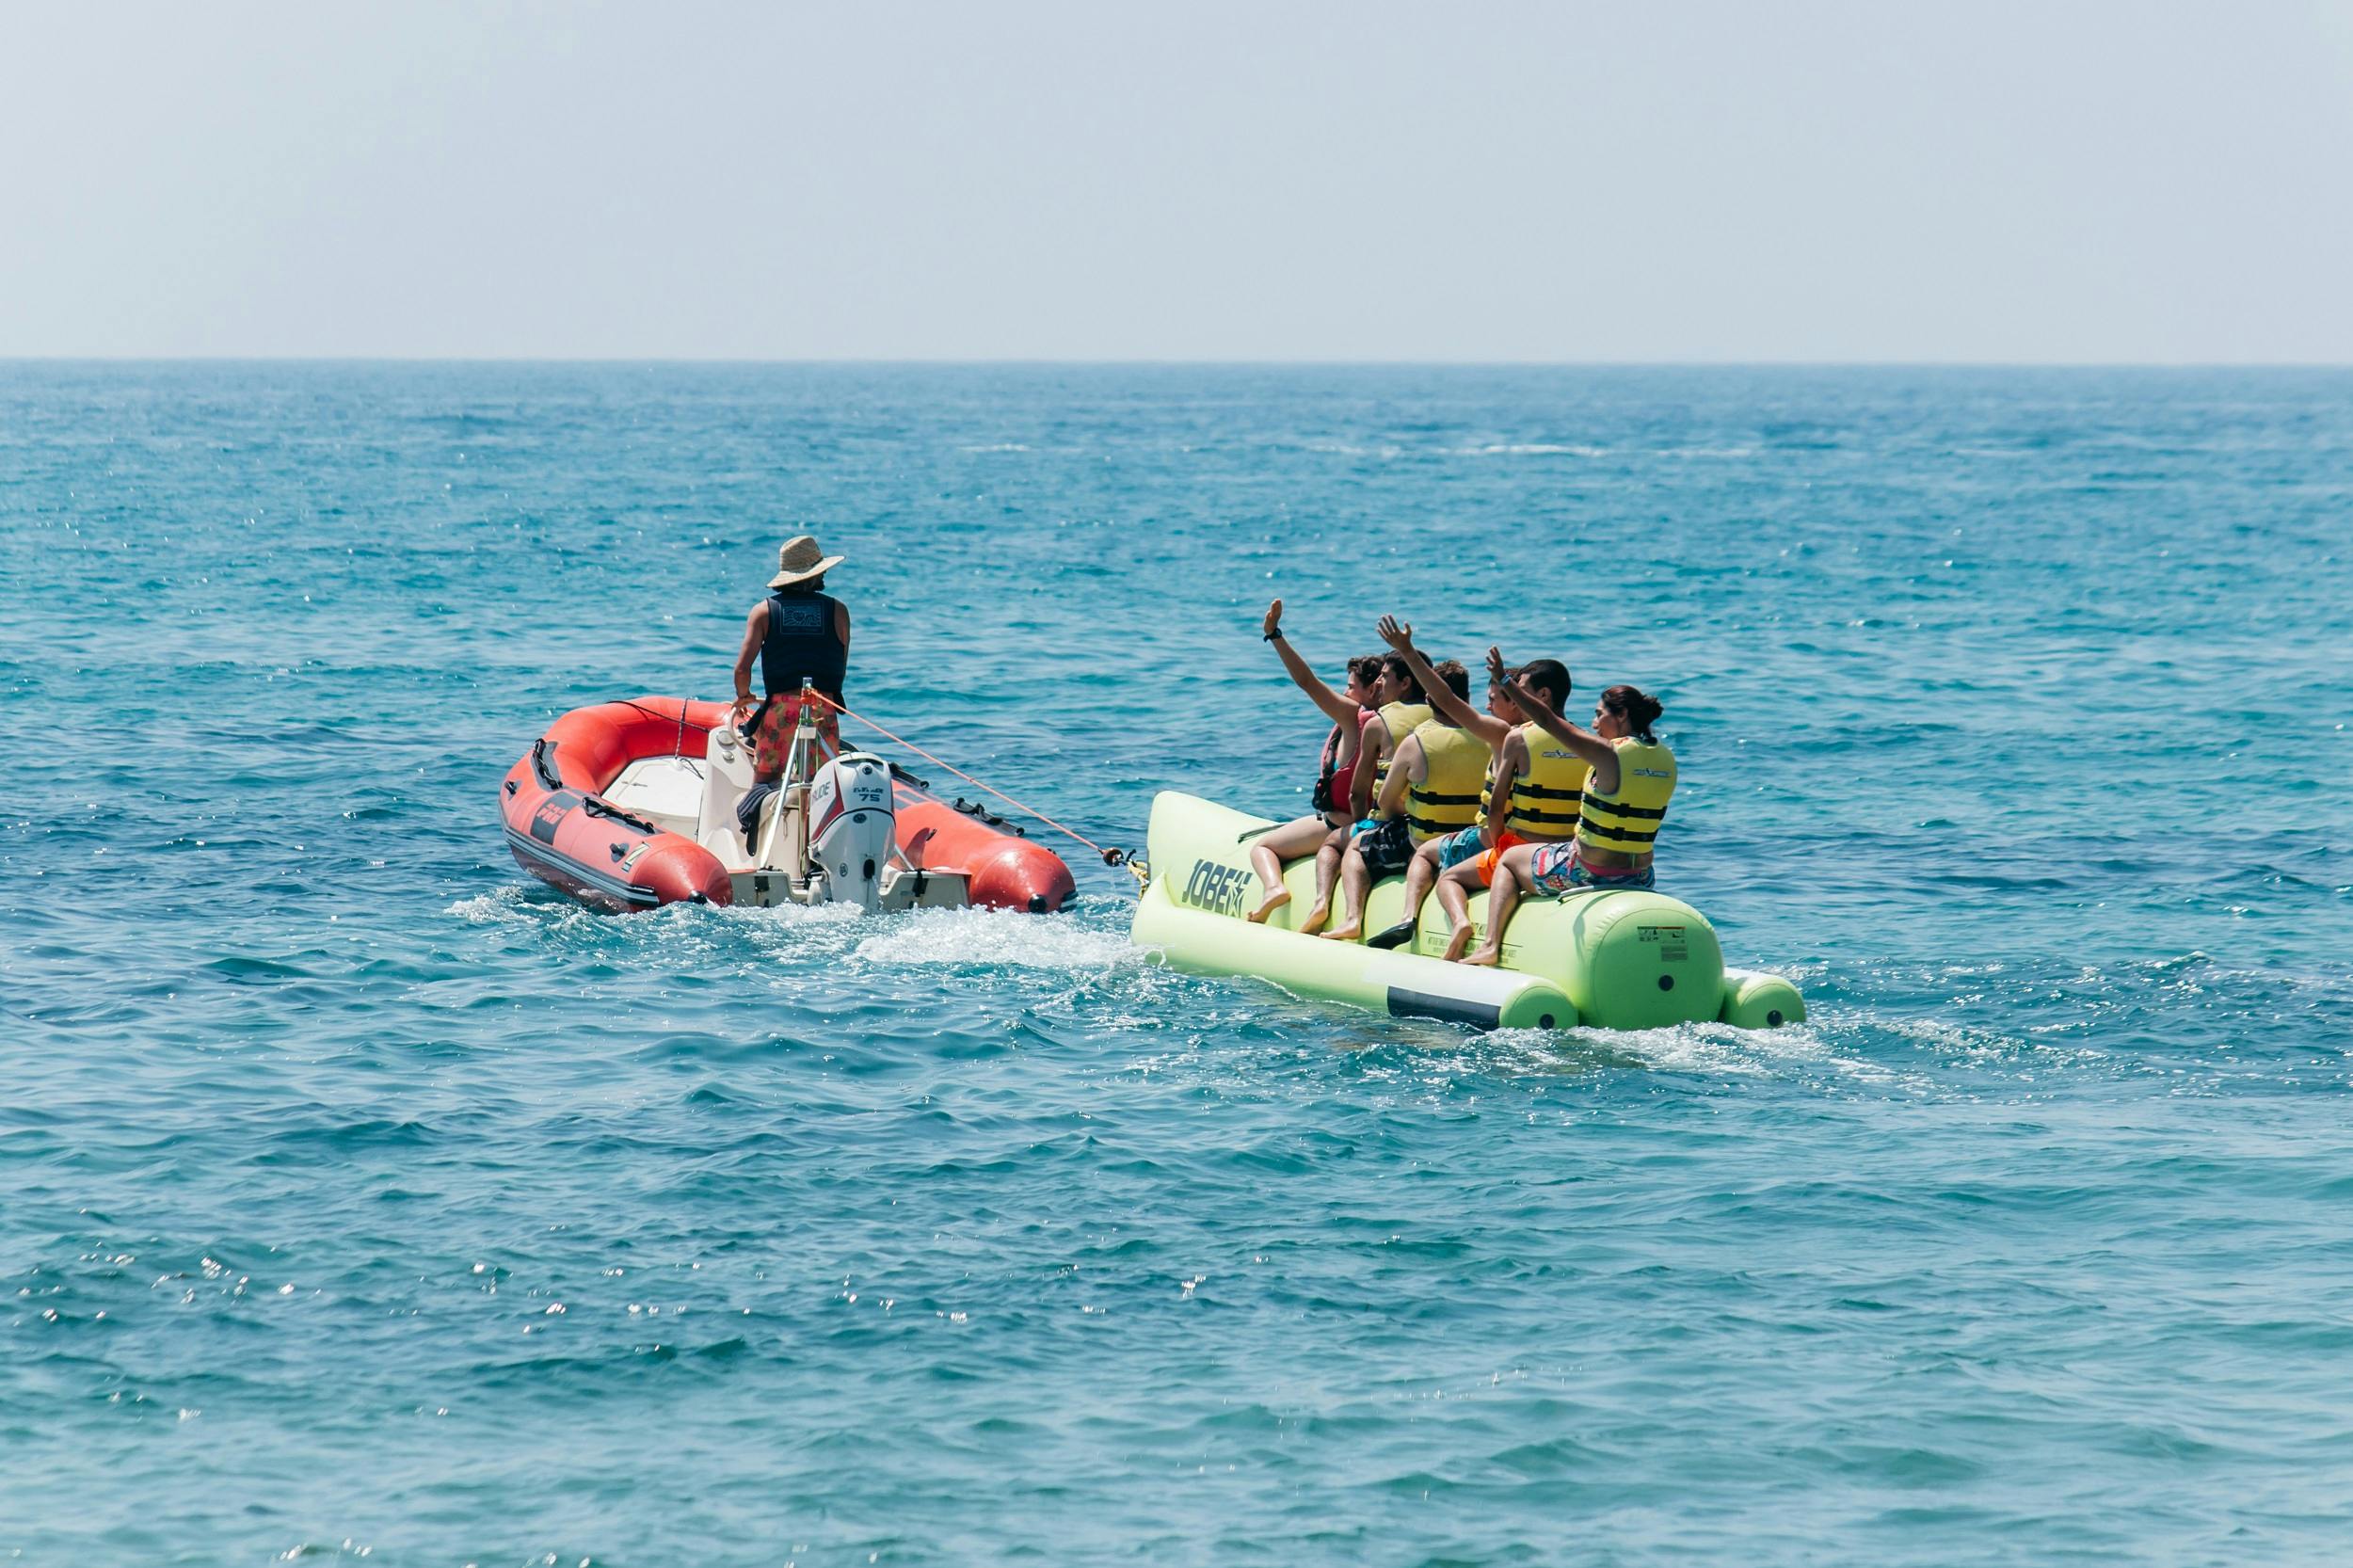 Banana boat ride in Salou